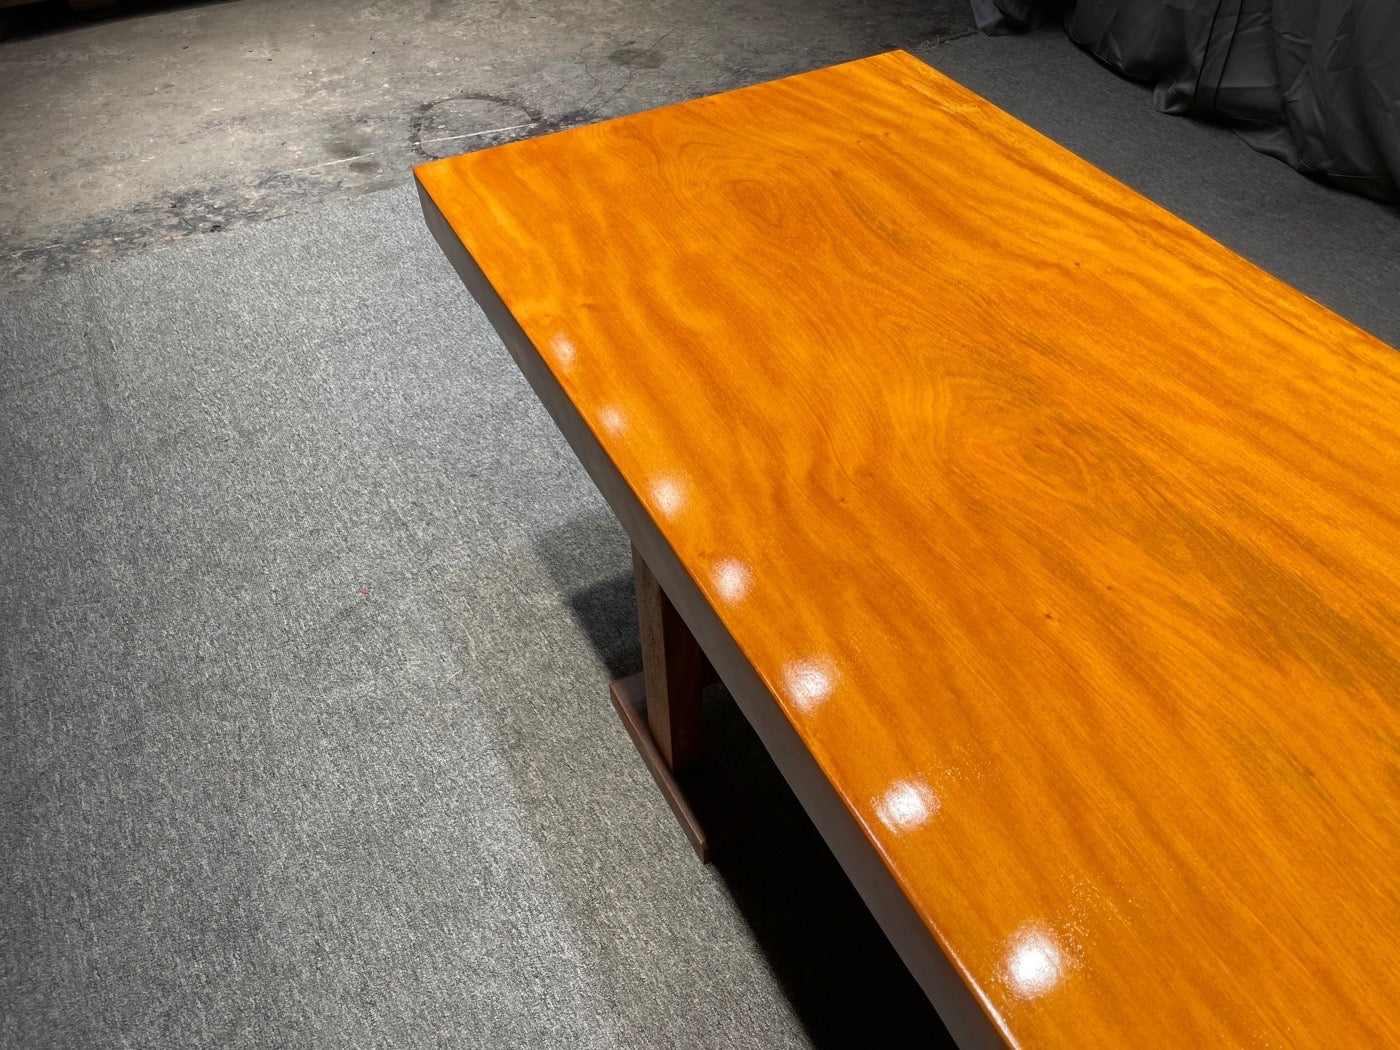 Chiviri wood, Giant Slab Table, Slab Table Hardware